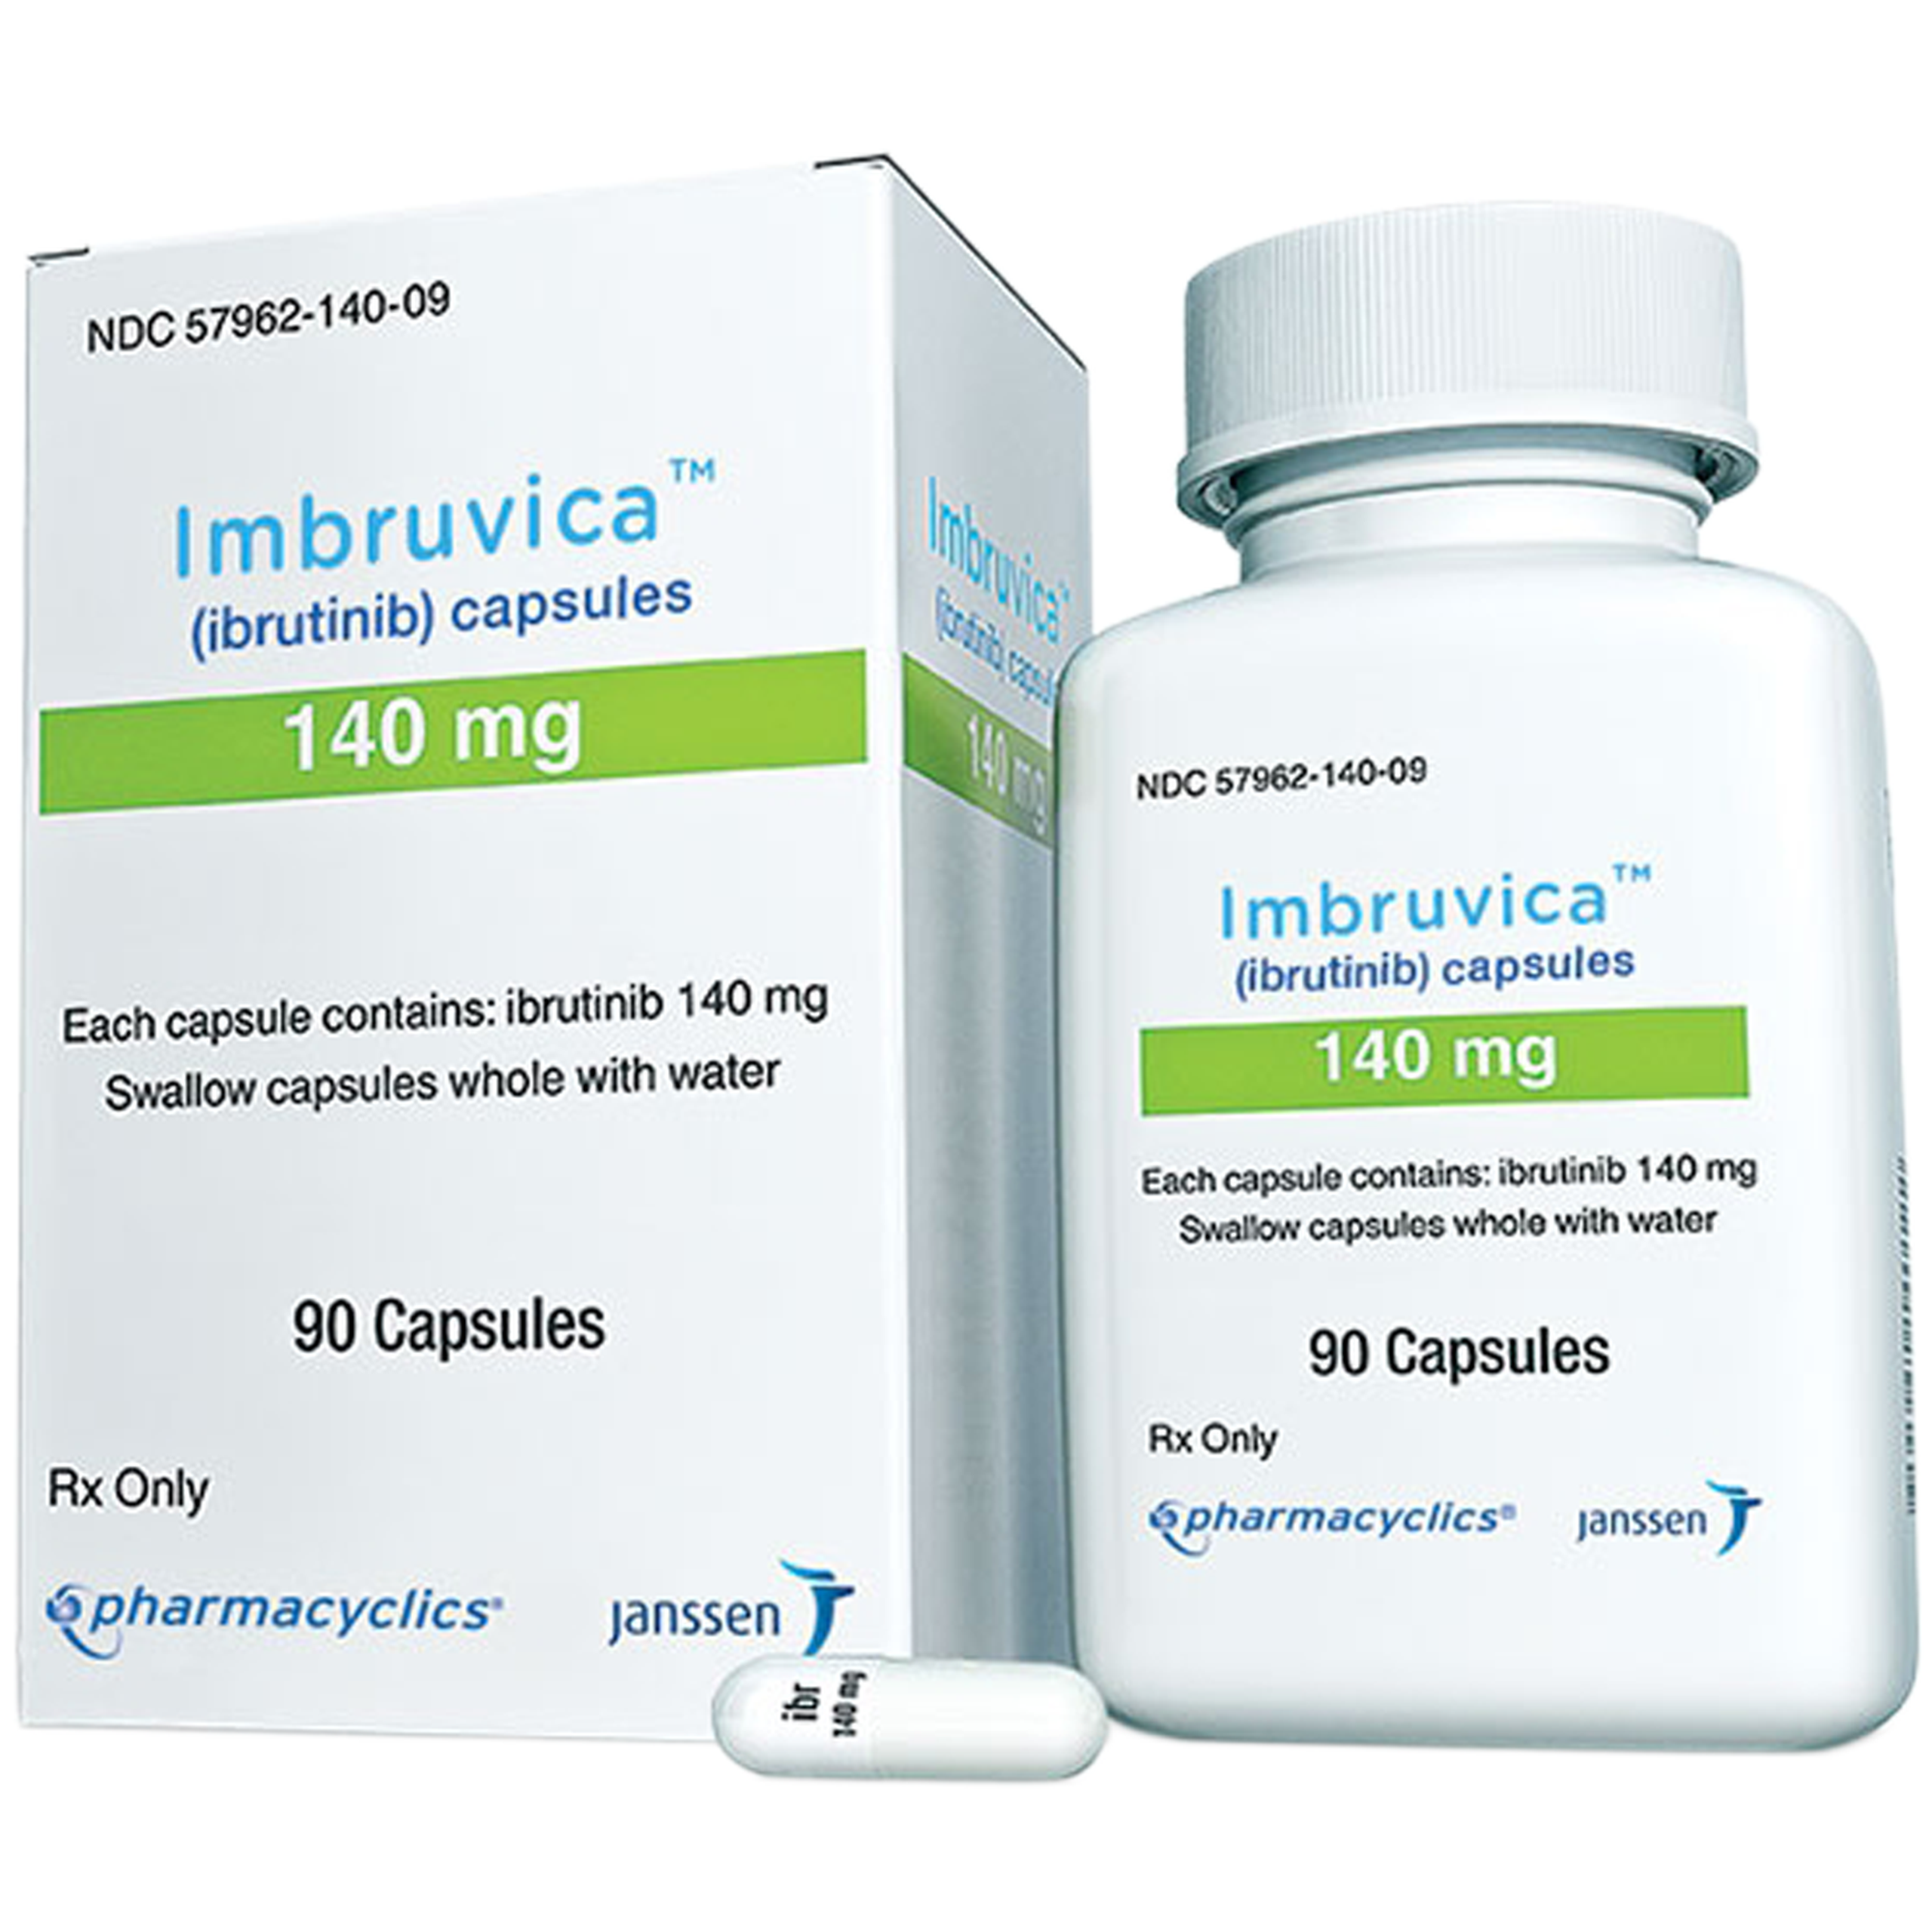 Thuốc Imbruvica Janssen điều trị u lympho tế bào vỏ, bạch cầu mạn tính dòng lympho (90 viên)